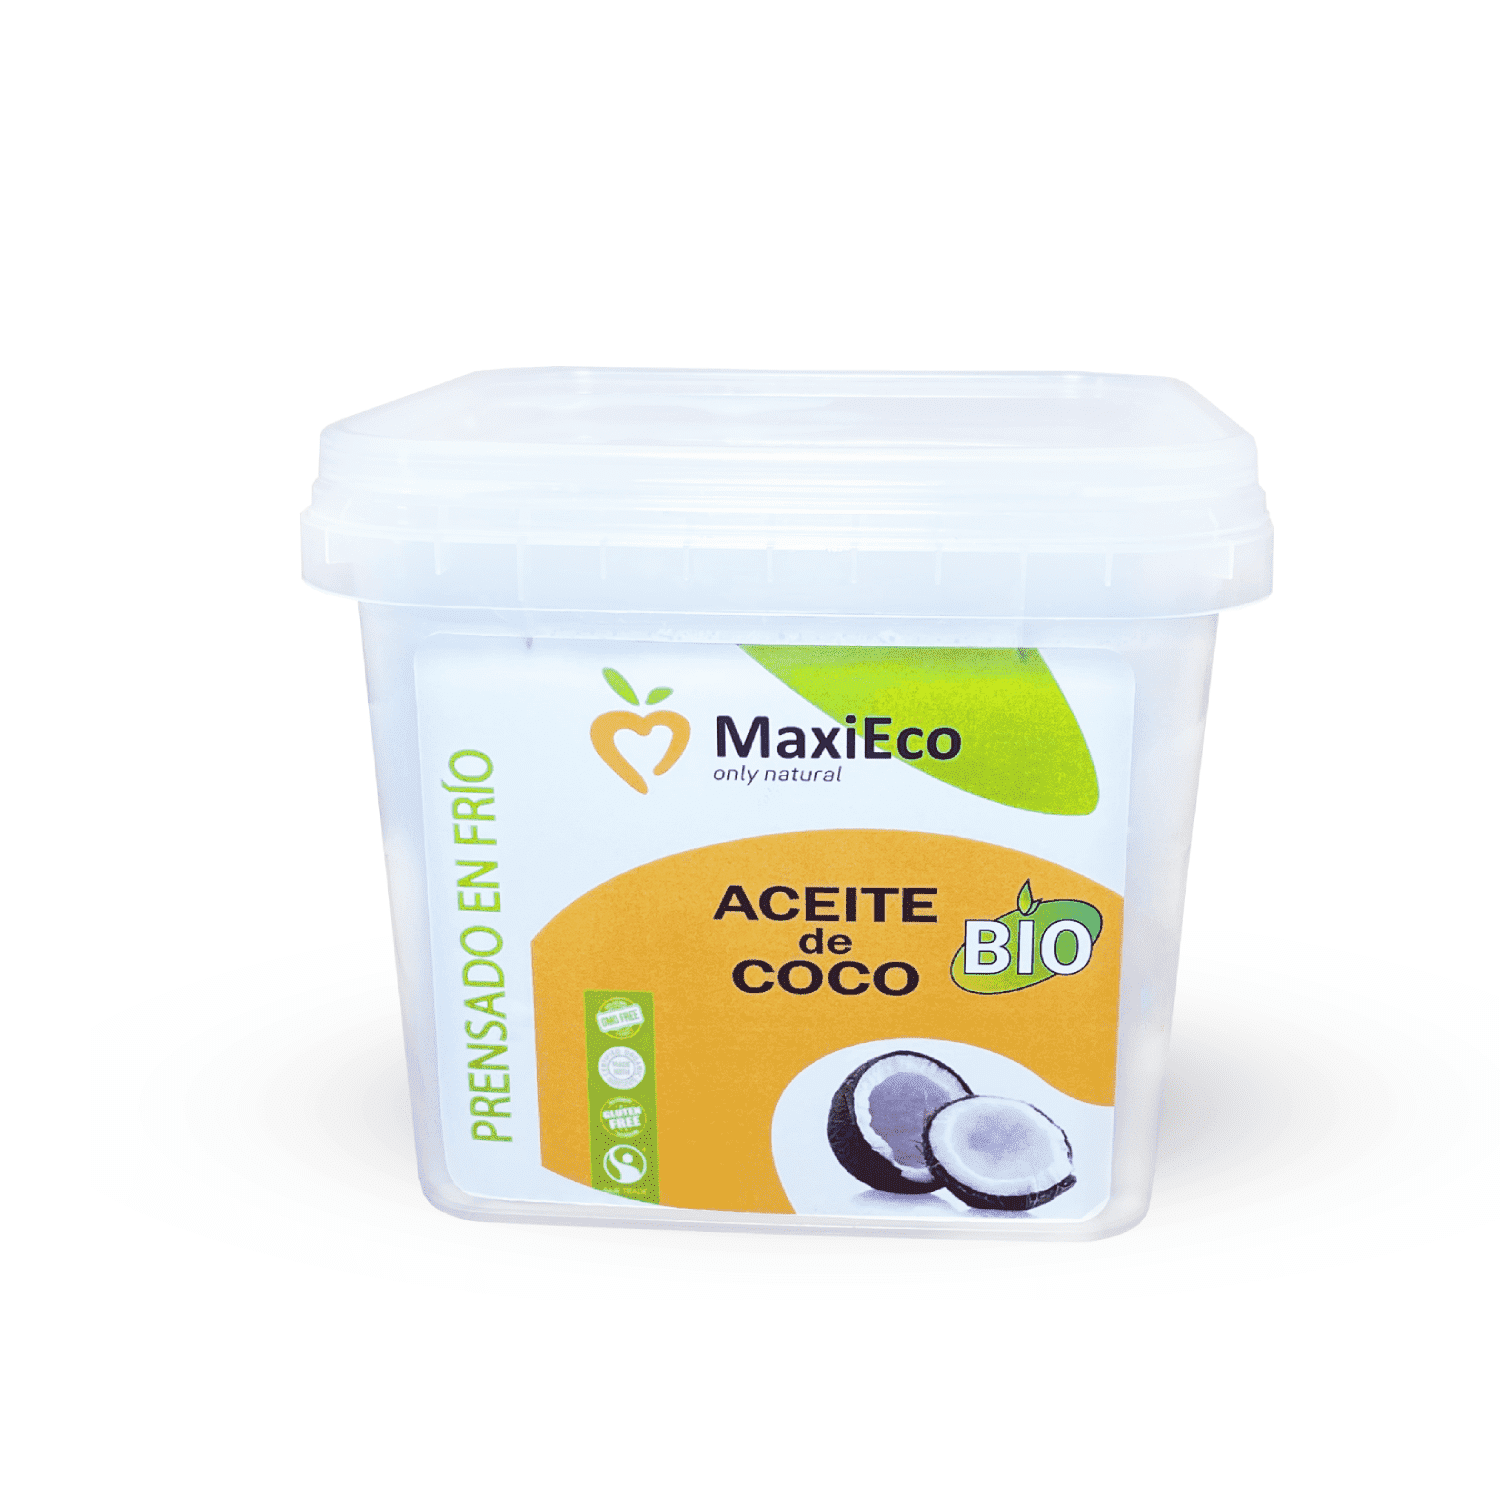 Aceite de Coco orgánico - MaxiEco - Solo productos naturales